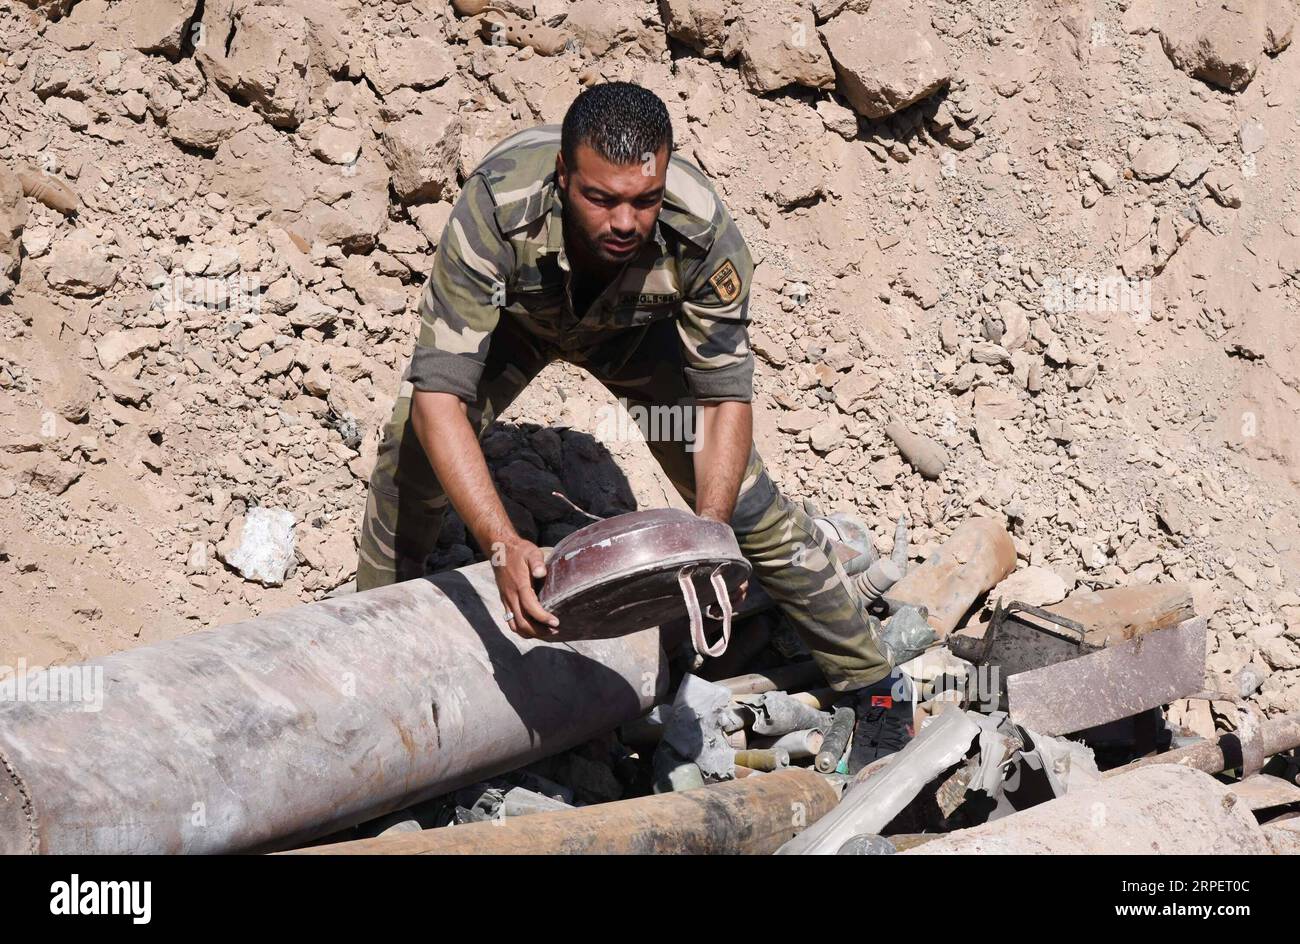 (190903) -- DAMAS, 3 septembre 2019 -- Un soldat syrien démonte une bombe dans la campagne de la Ghouta orientale à Damas, en Syrie, le 3 septembre 2019. Les médias officiels syriens ont déclaré que l’armée désamorçait les armes laissées par les rebelles dans la Ghouta orientale. (Photo de /Xinhua) SYRIE-DAMAS-EXPLOSIFS REBELLES AmmarxSafarjalani PUBLICATIONxNOTxINxCHN Banque D'Images